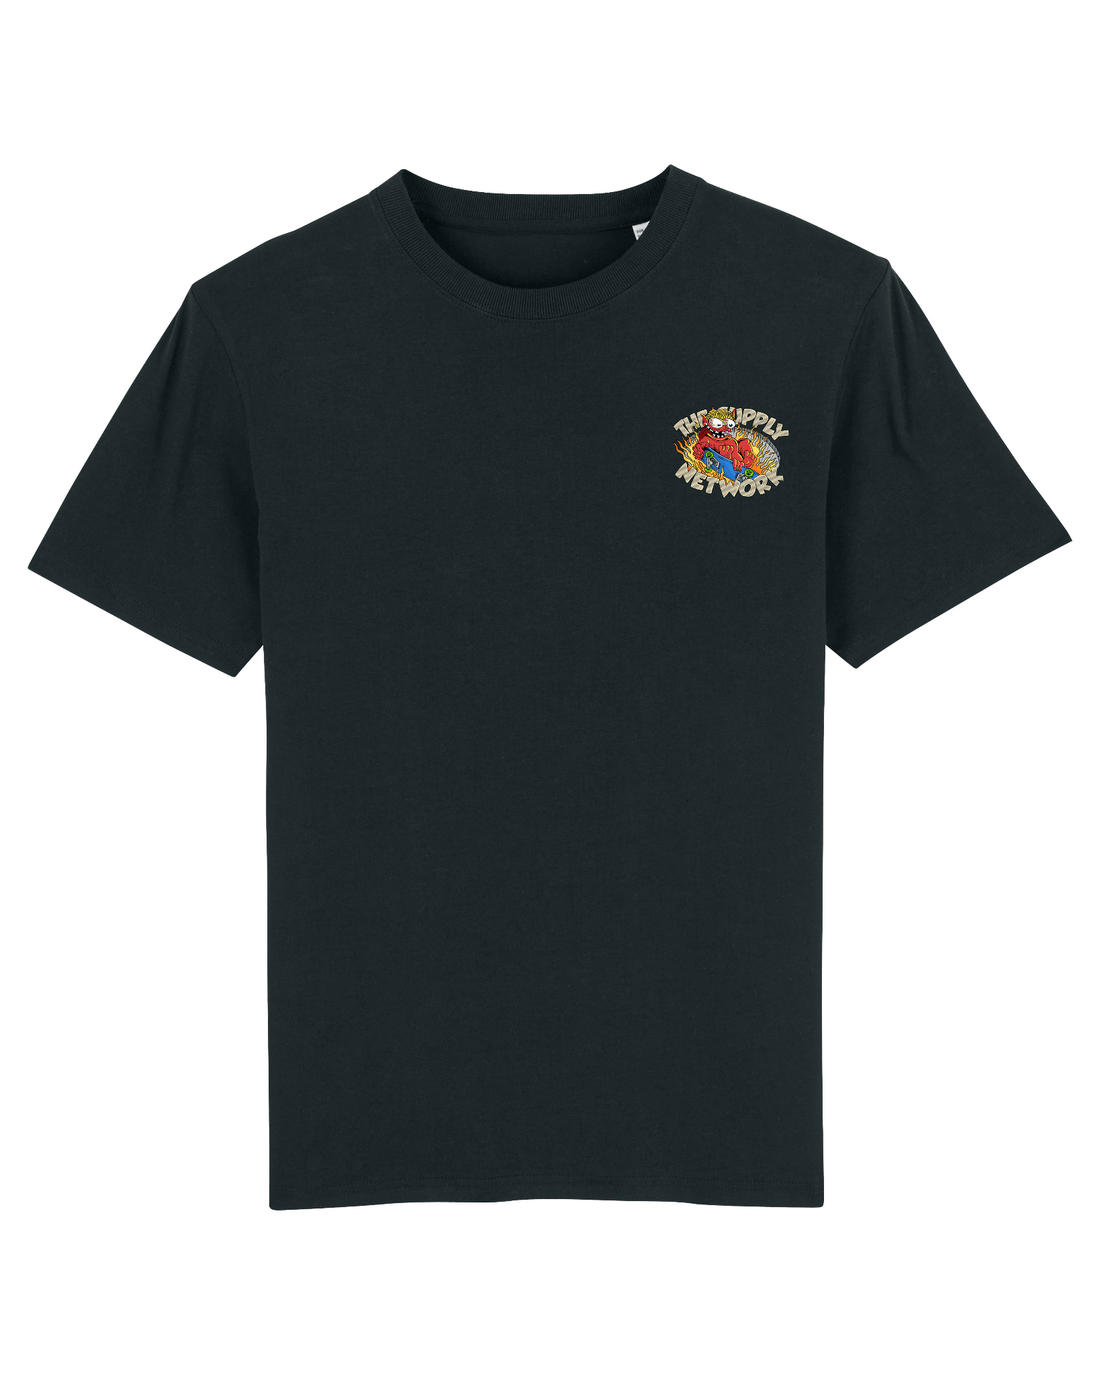 Black Skater T-Shirt, Devil Baby Front Print